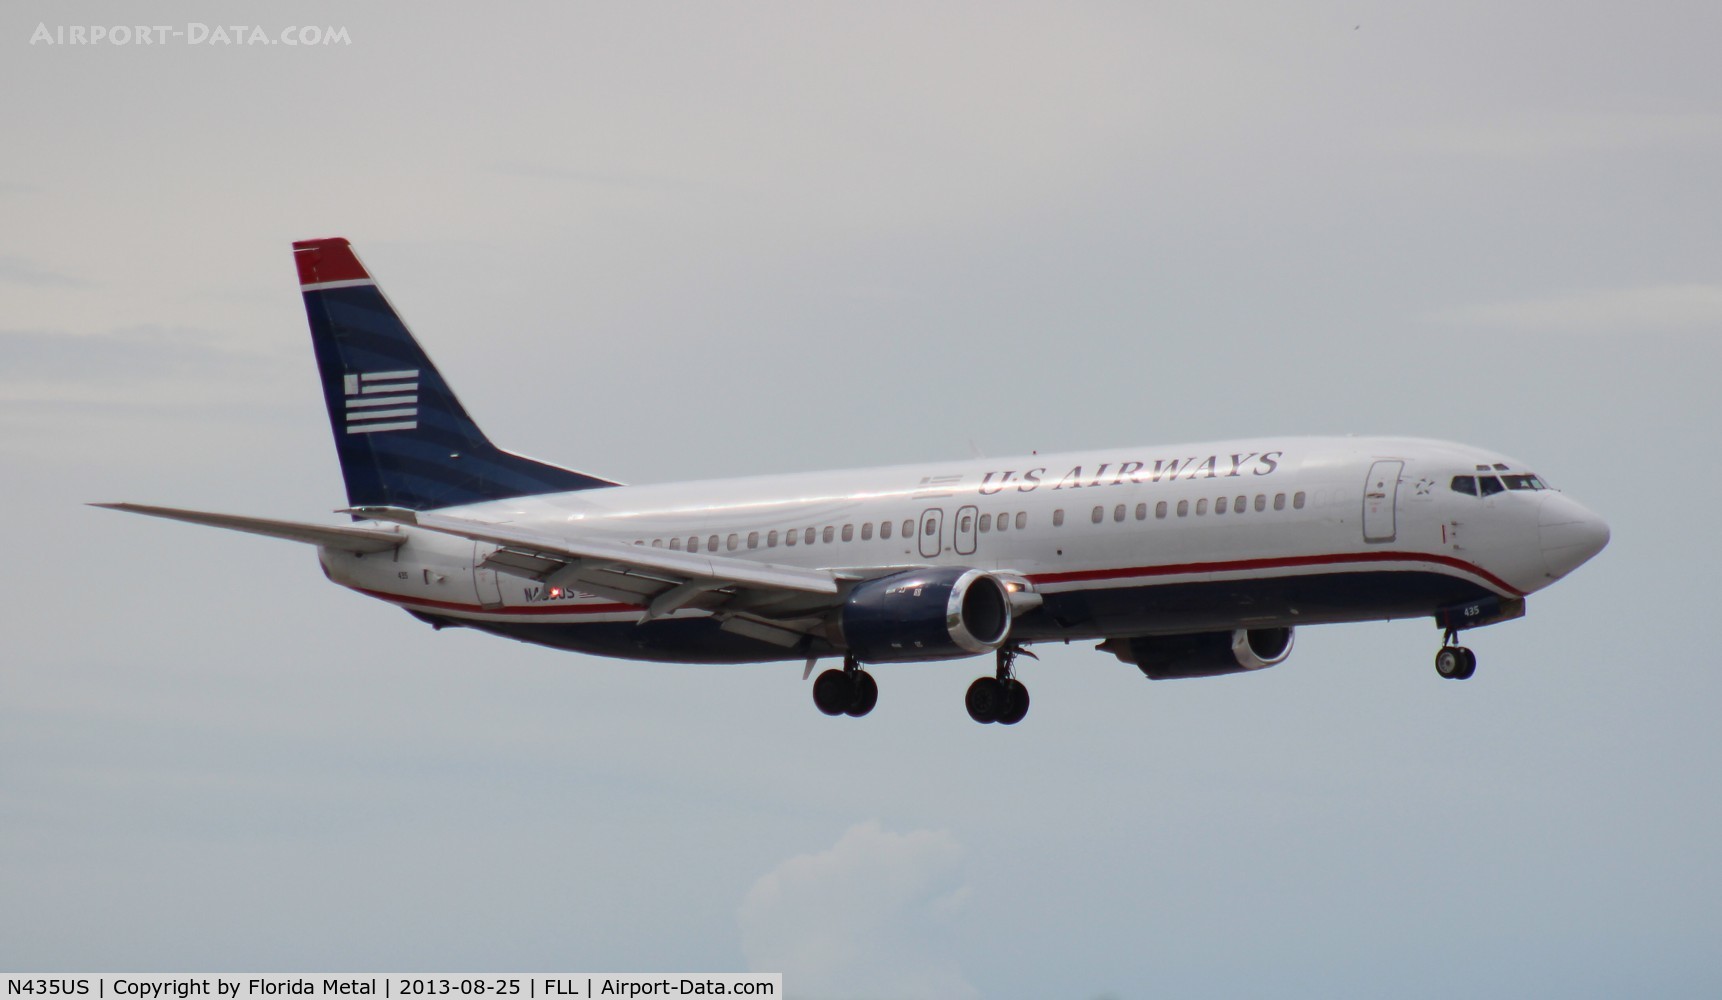 N435US, 1990 Boeing 737-4B7 C/N 24557, US Airways 737-400